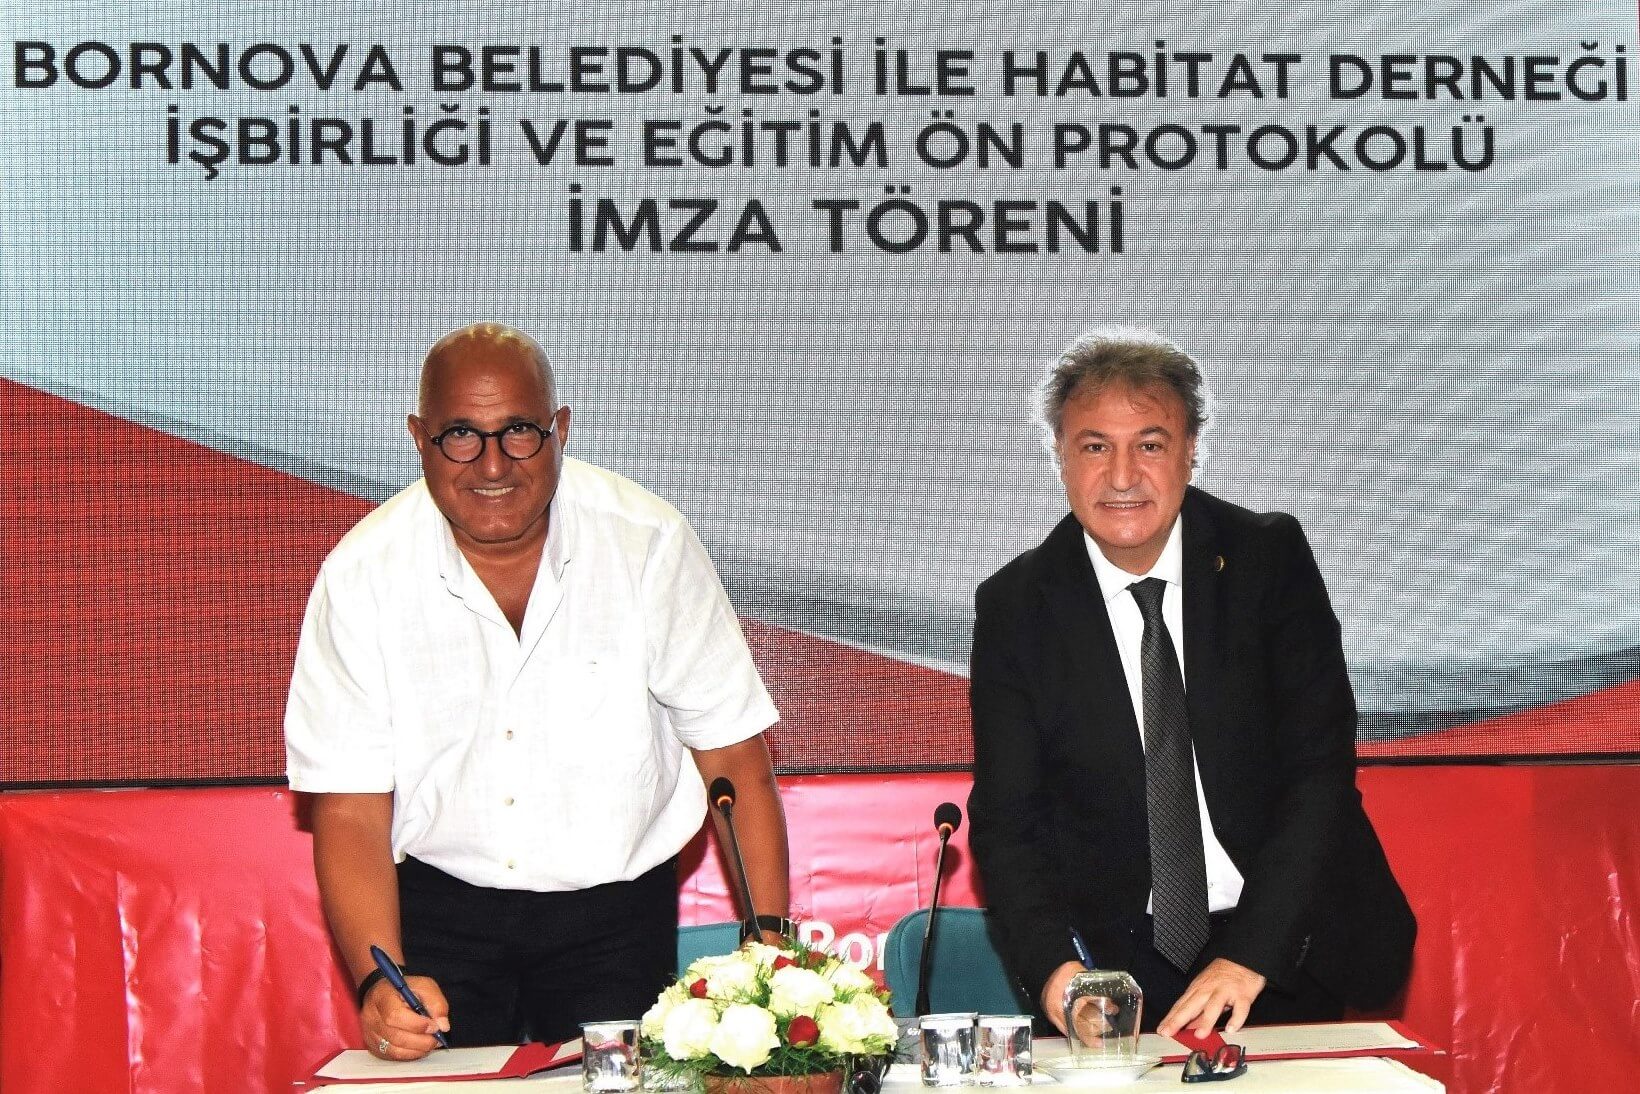 Habitat Derneği, İzmir Ticaret Borsası ve Bornova Belediyesi iş birliğiyle İzmir’de dijital eğitim seferberliği başlatılıyor